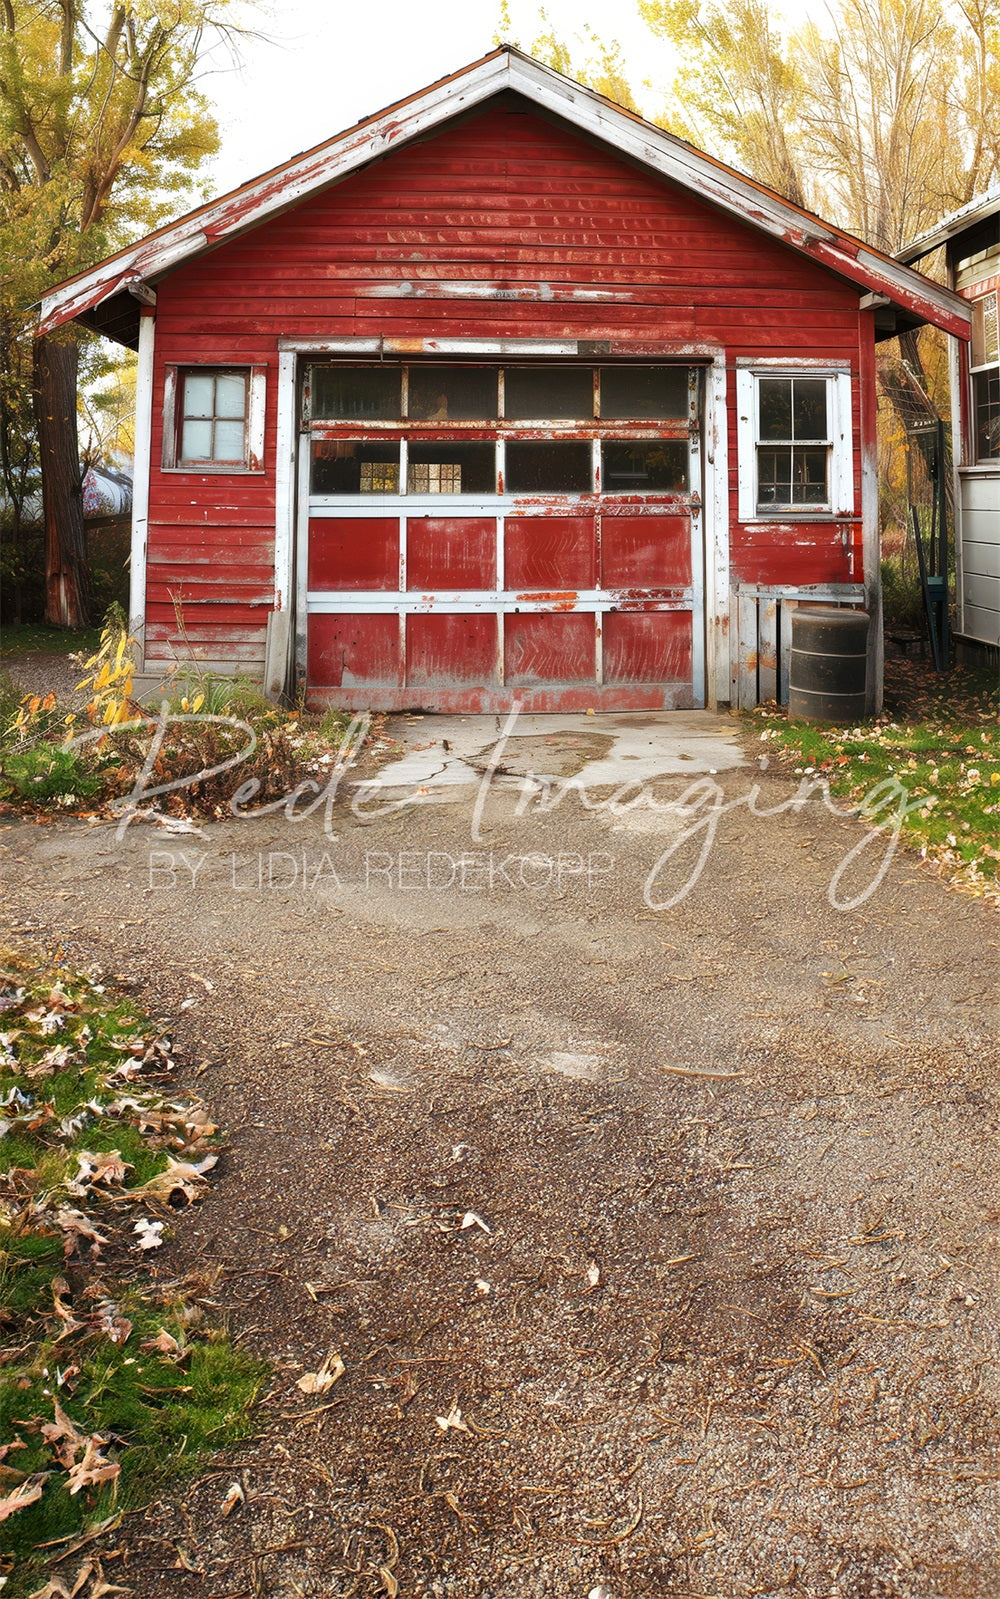 Herfst Buitenhuis Rode Oude Garage Achtergrond Ontworpen door Lidia Redekopp